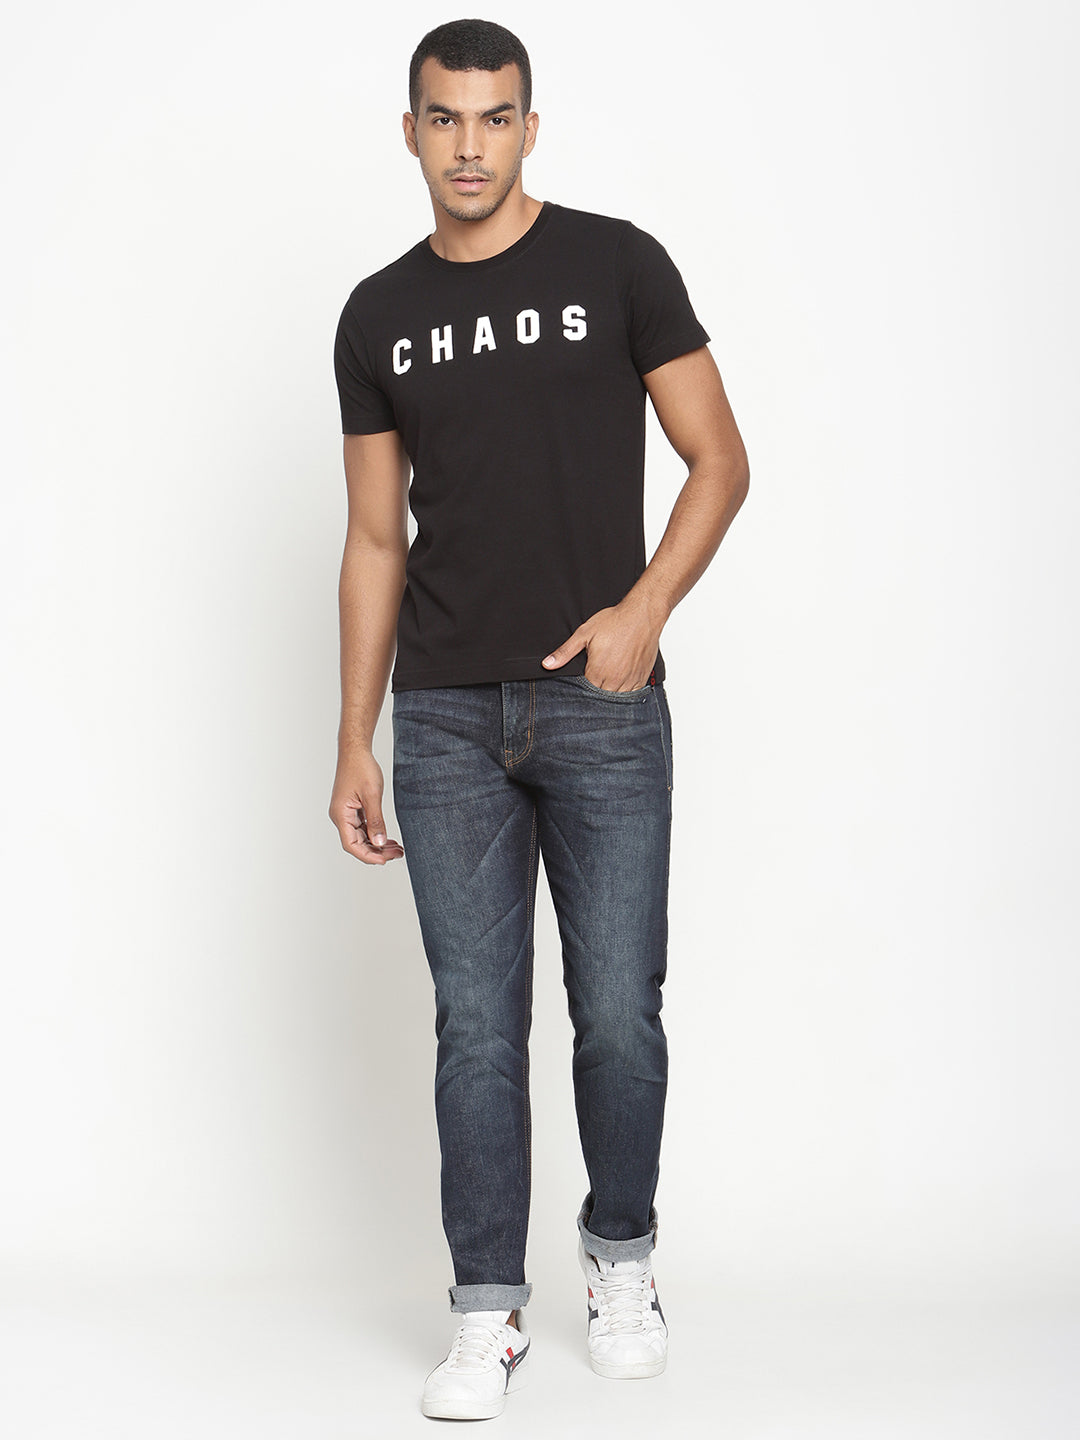 Punk CHAOS Black T-shirt